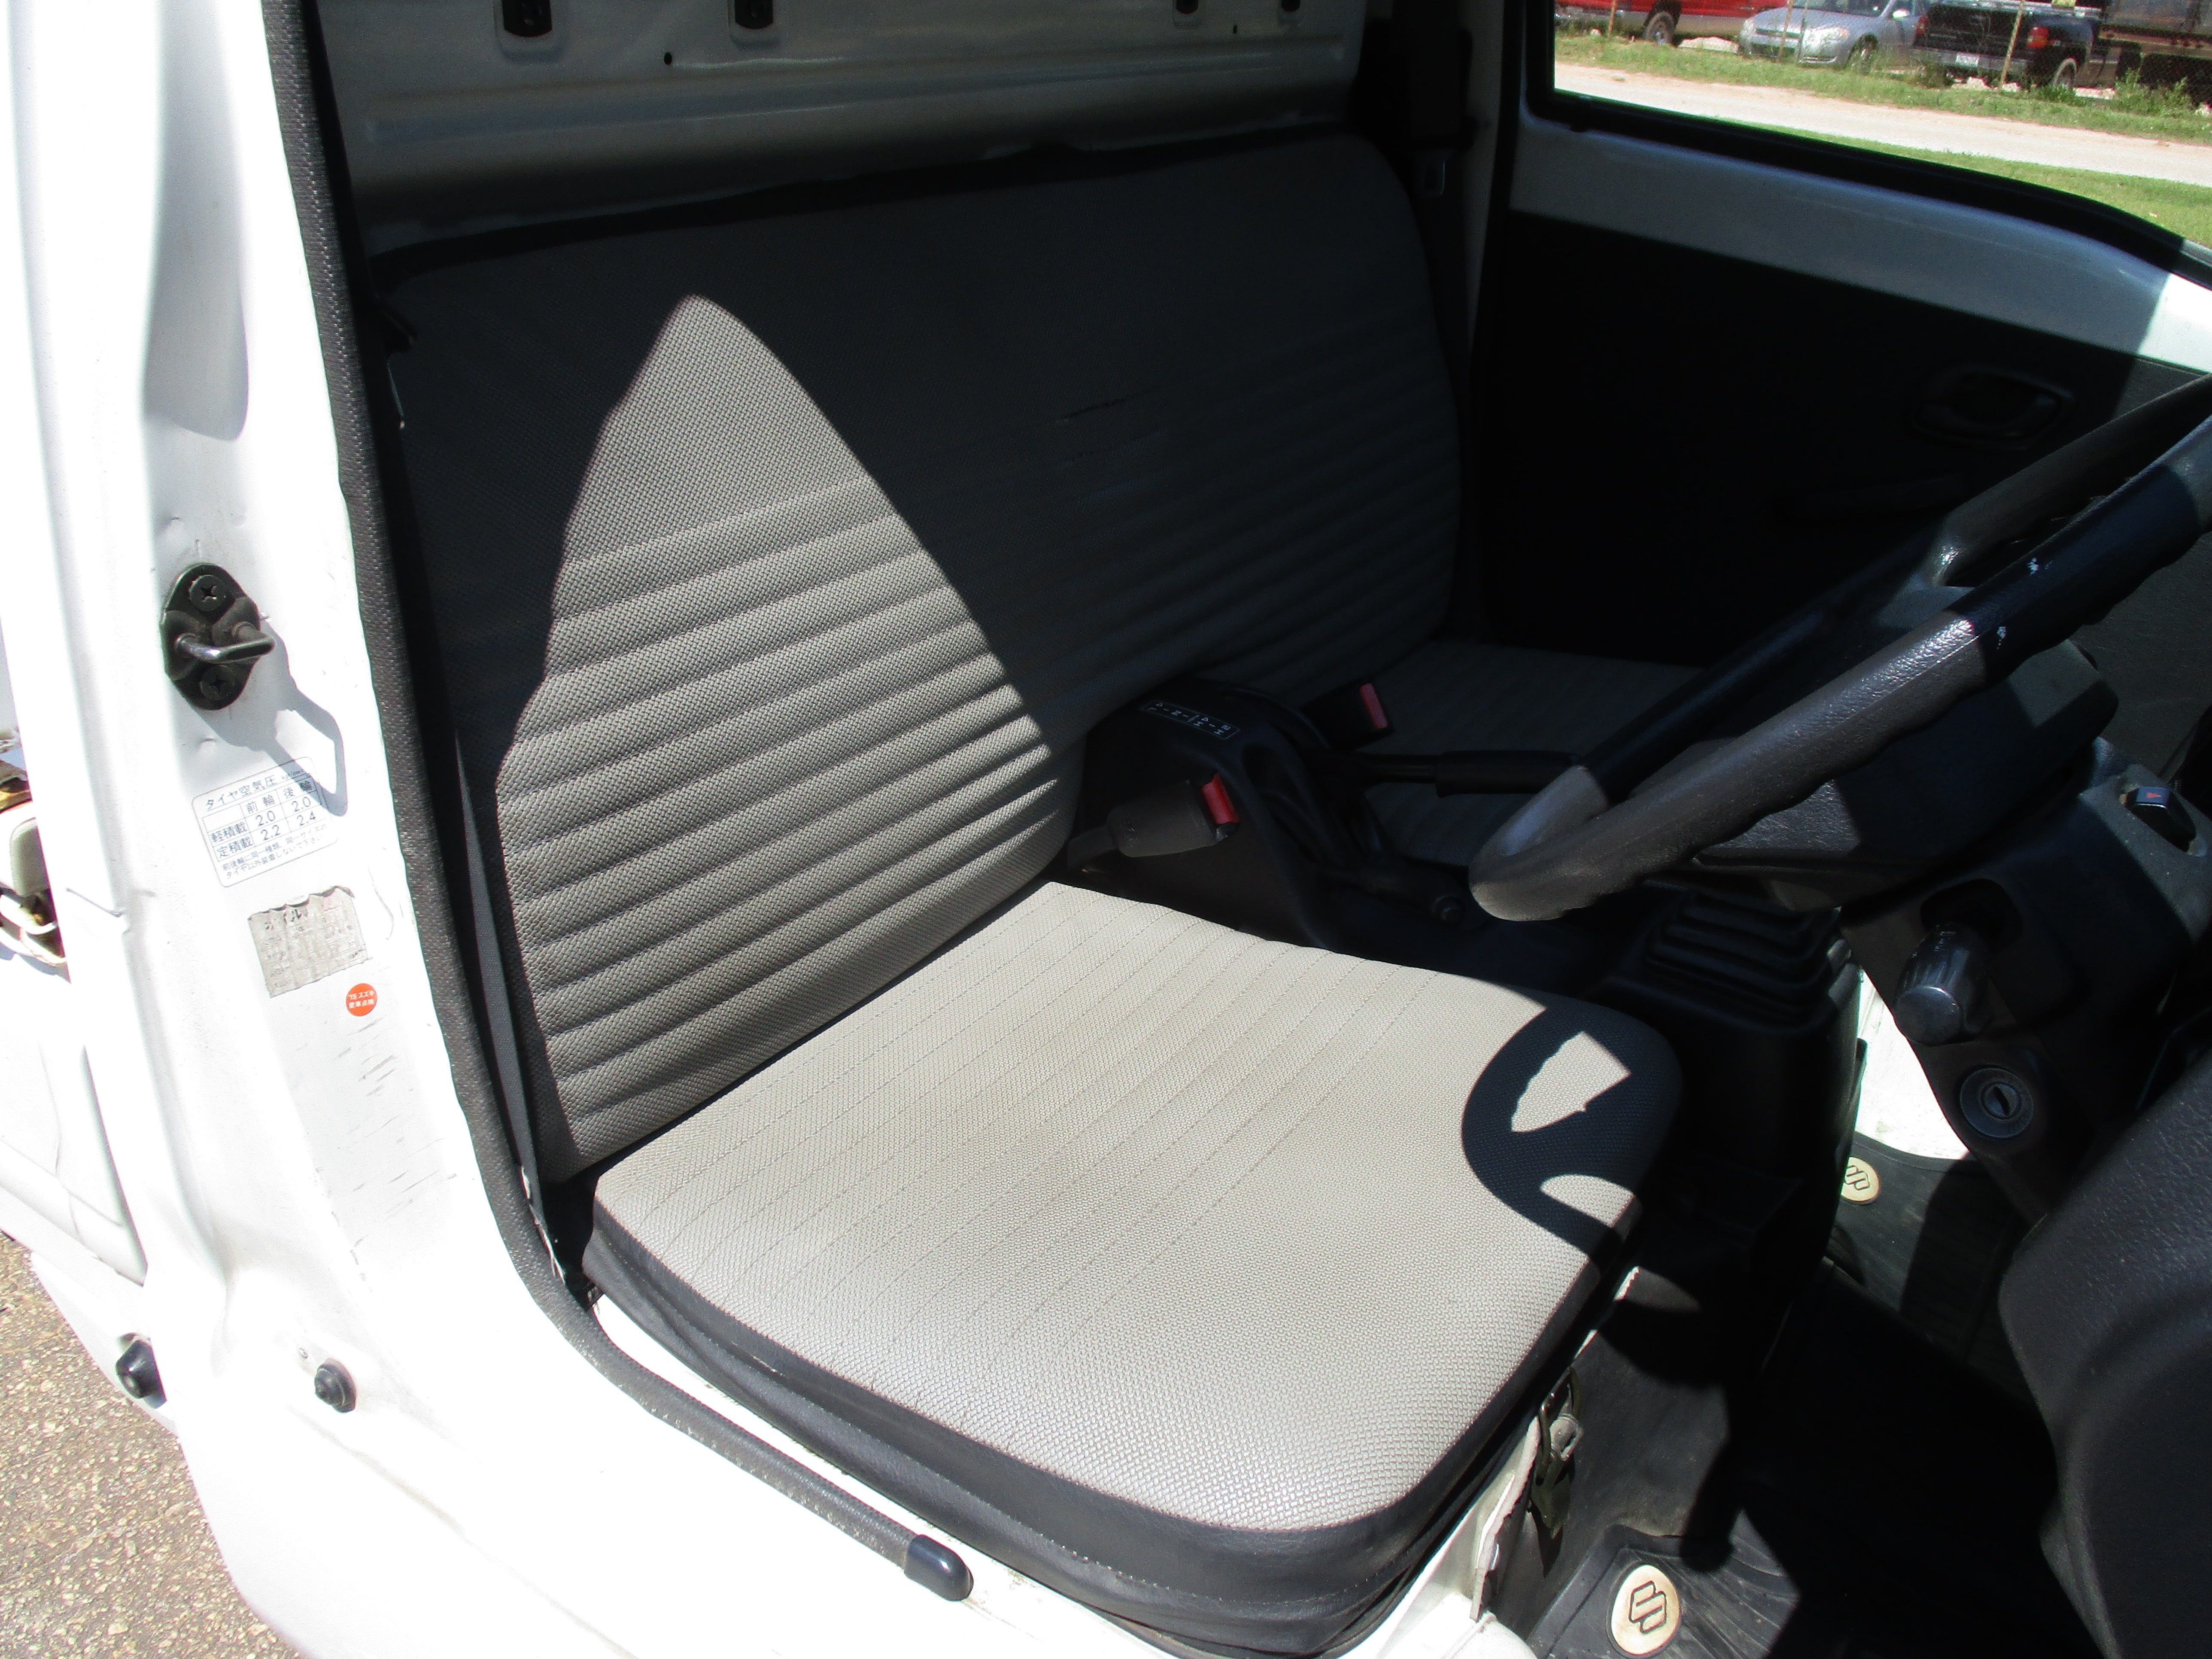 JDM 95 Suzuki Carry 4WD KU Mini Truck Manual Tall Bed 4Lo/4Hi